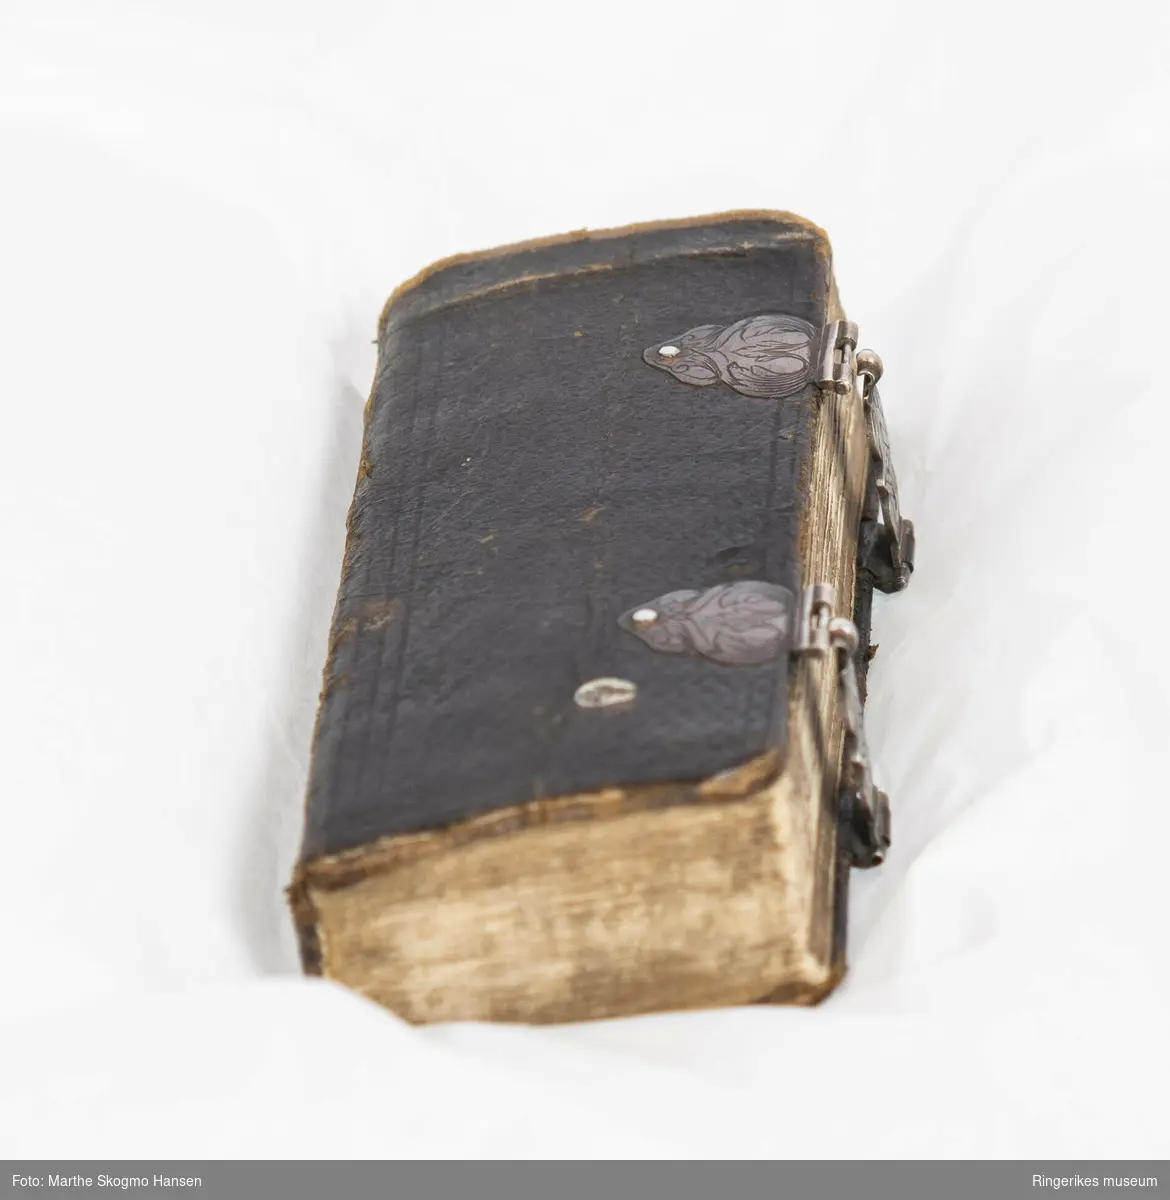 Liten salmebok. 270 sider. Trykket i København i 1762. Uleselig håndskrift på de første og siste sidene. Trepermer trukket med lær på utsidene. Boken lukkes med mønsterdekorerte tinnlåser. Sidenes utsider har innskåret mønster.